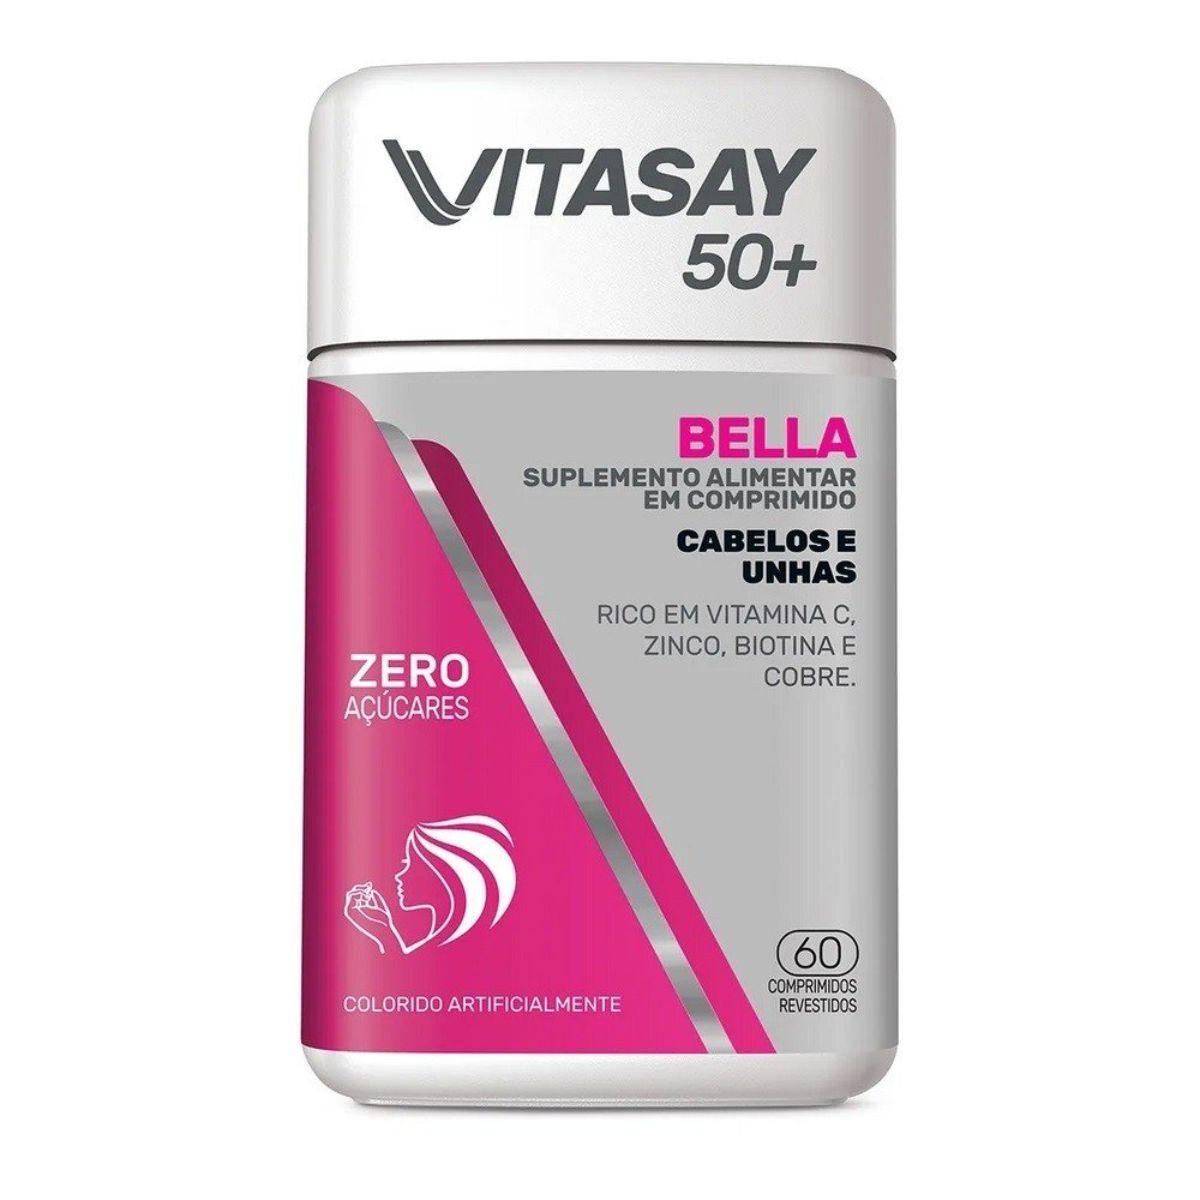 vitasay-50+-bella-pote-60-comprimidos-1.jpg